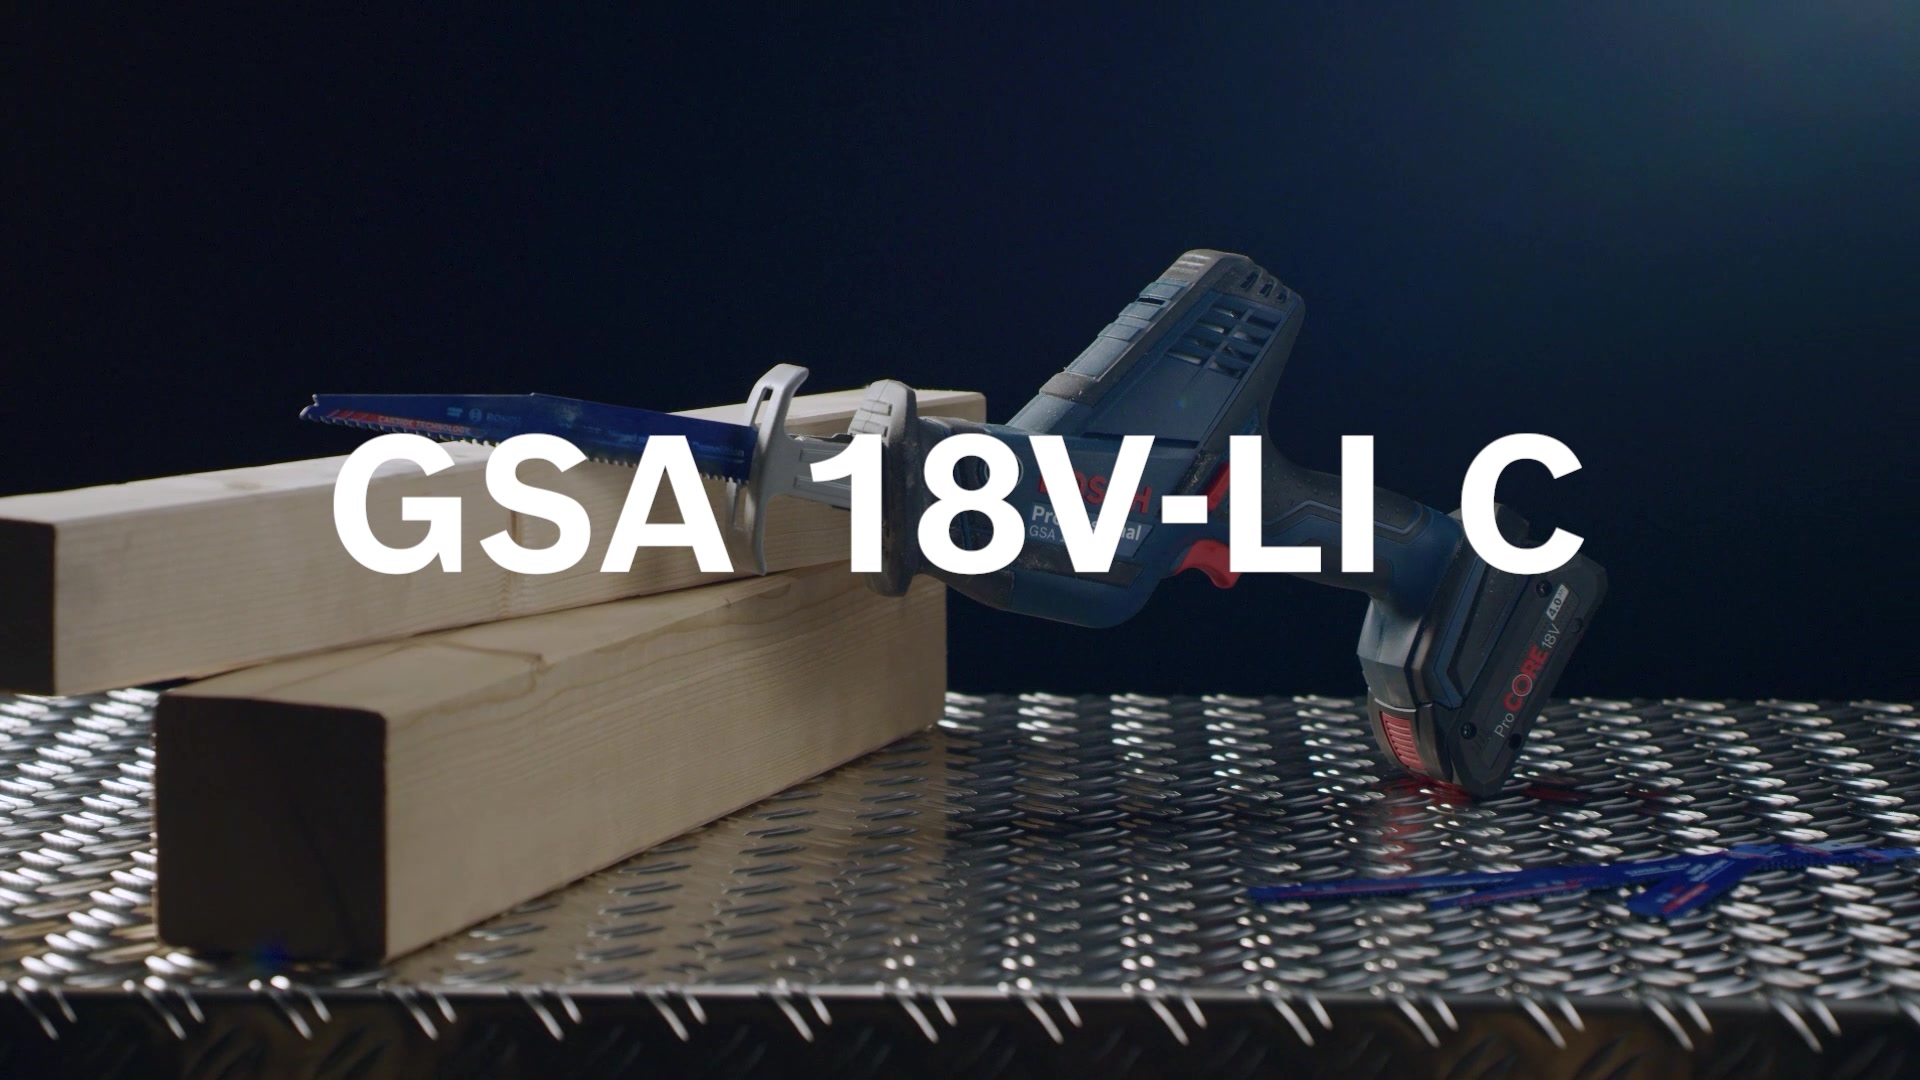 GSA 18V-LI C